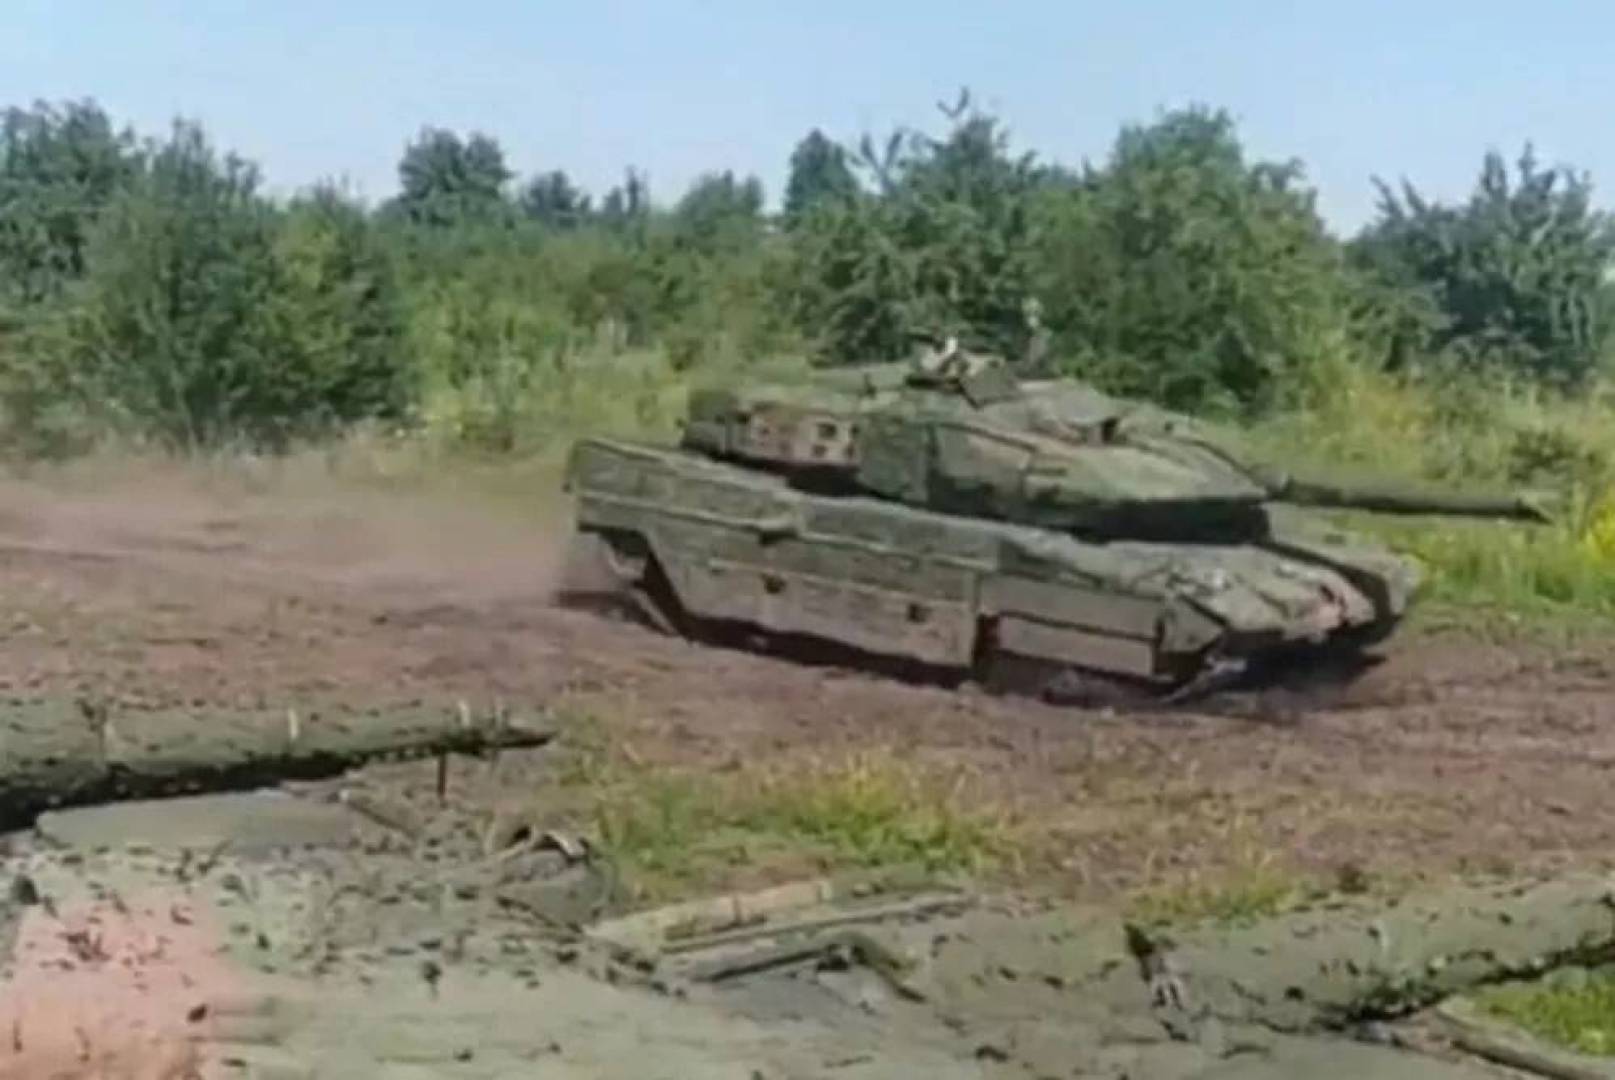 تفاصيل تقنية عن دبابات Stridsvagn 122 السويدية التي تسلمها الجيش الأوكراني